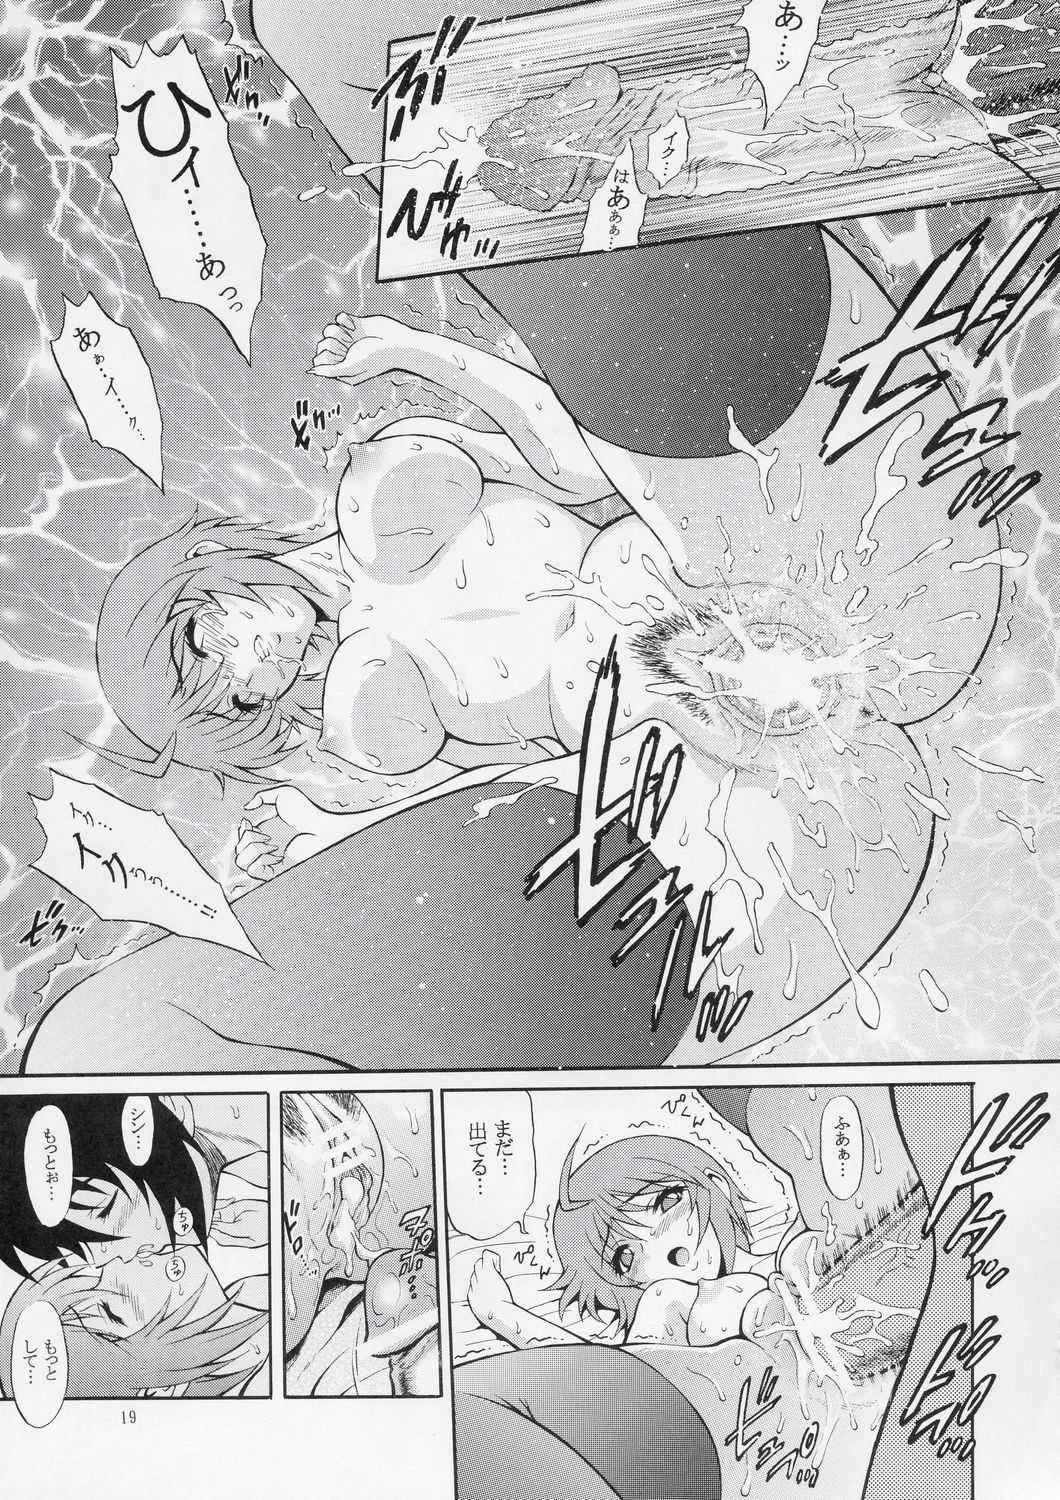 [Harukaze Soyogu] Burning!! 01 [Gundam Seed Destiny] 